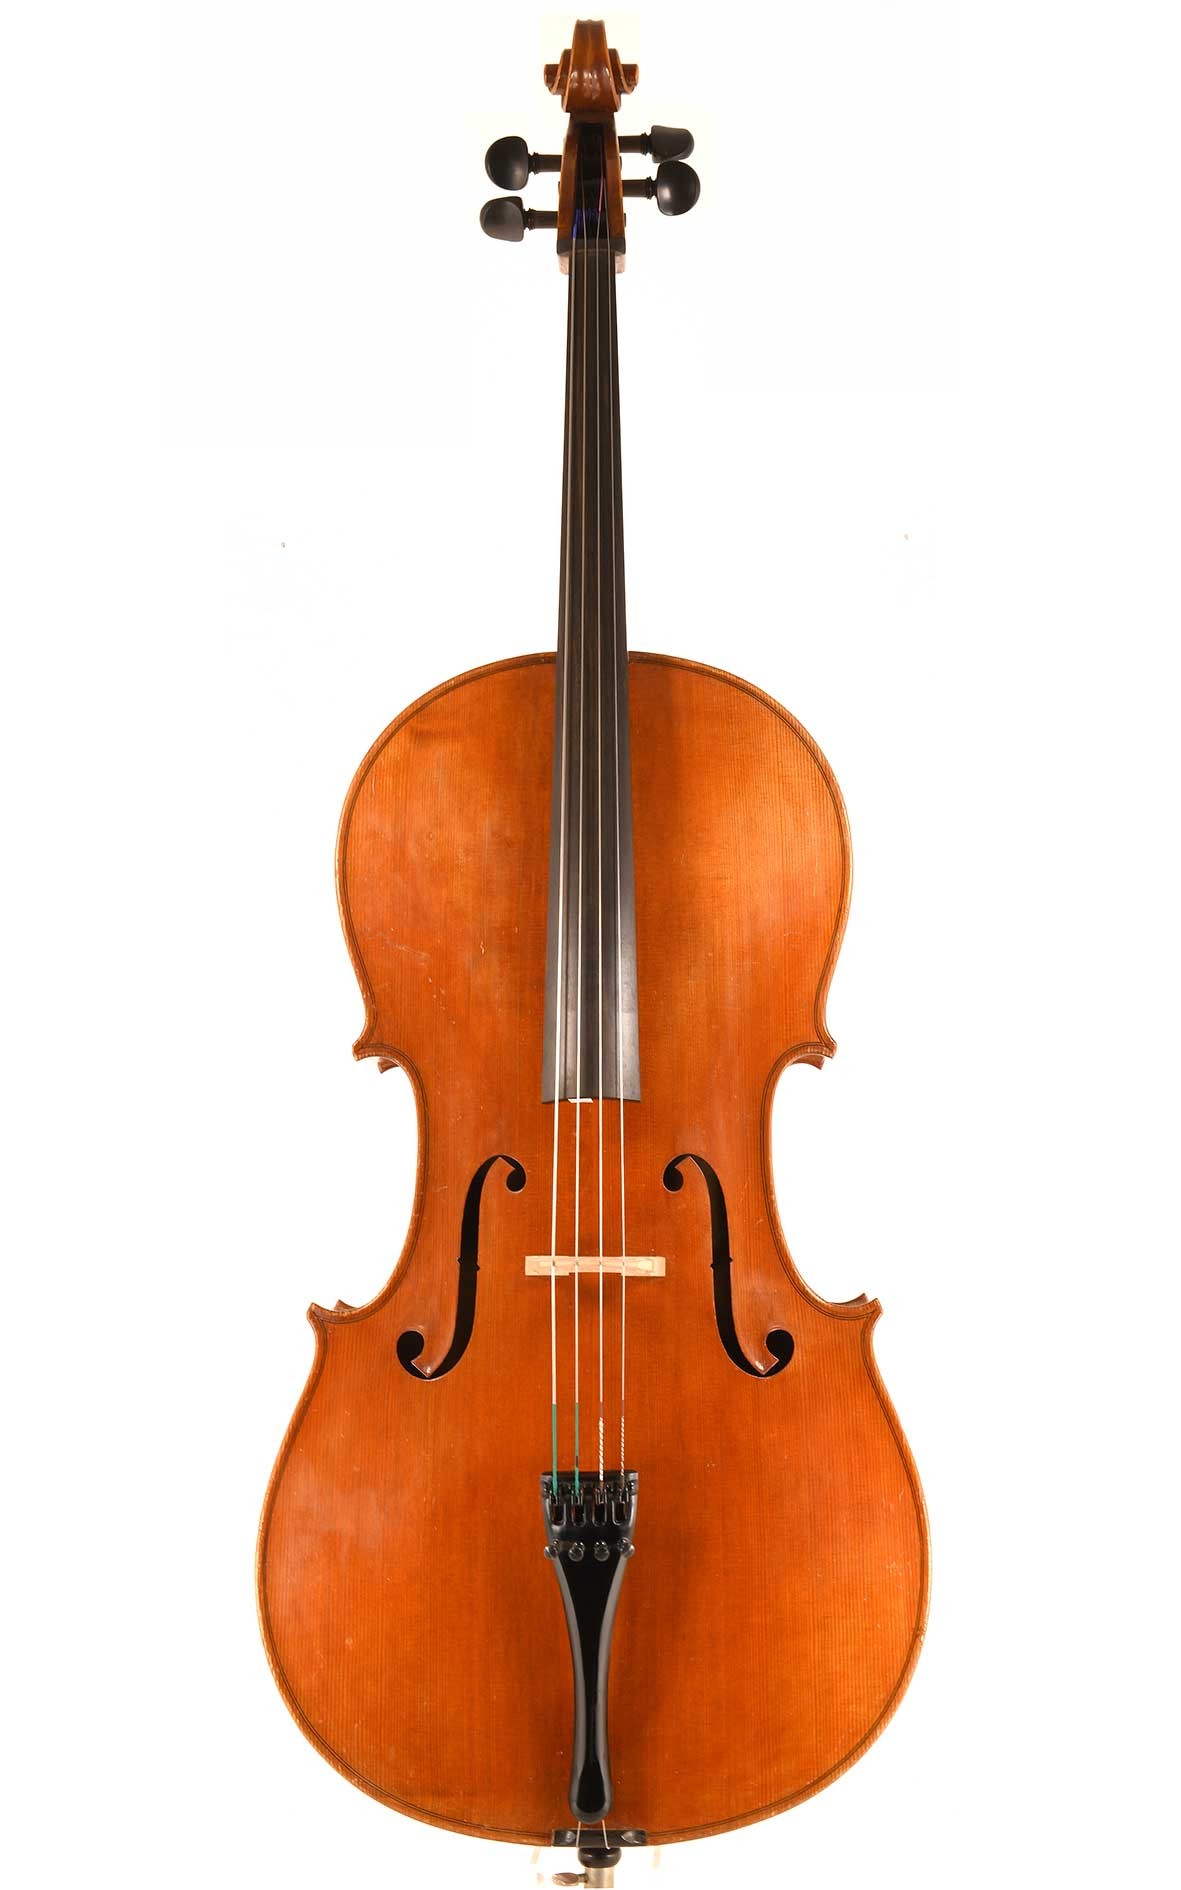 Markneukirchen cello